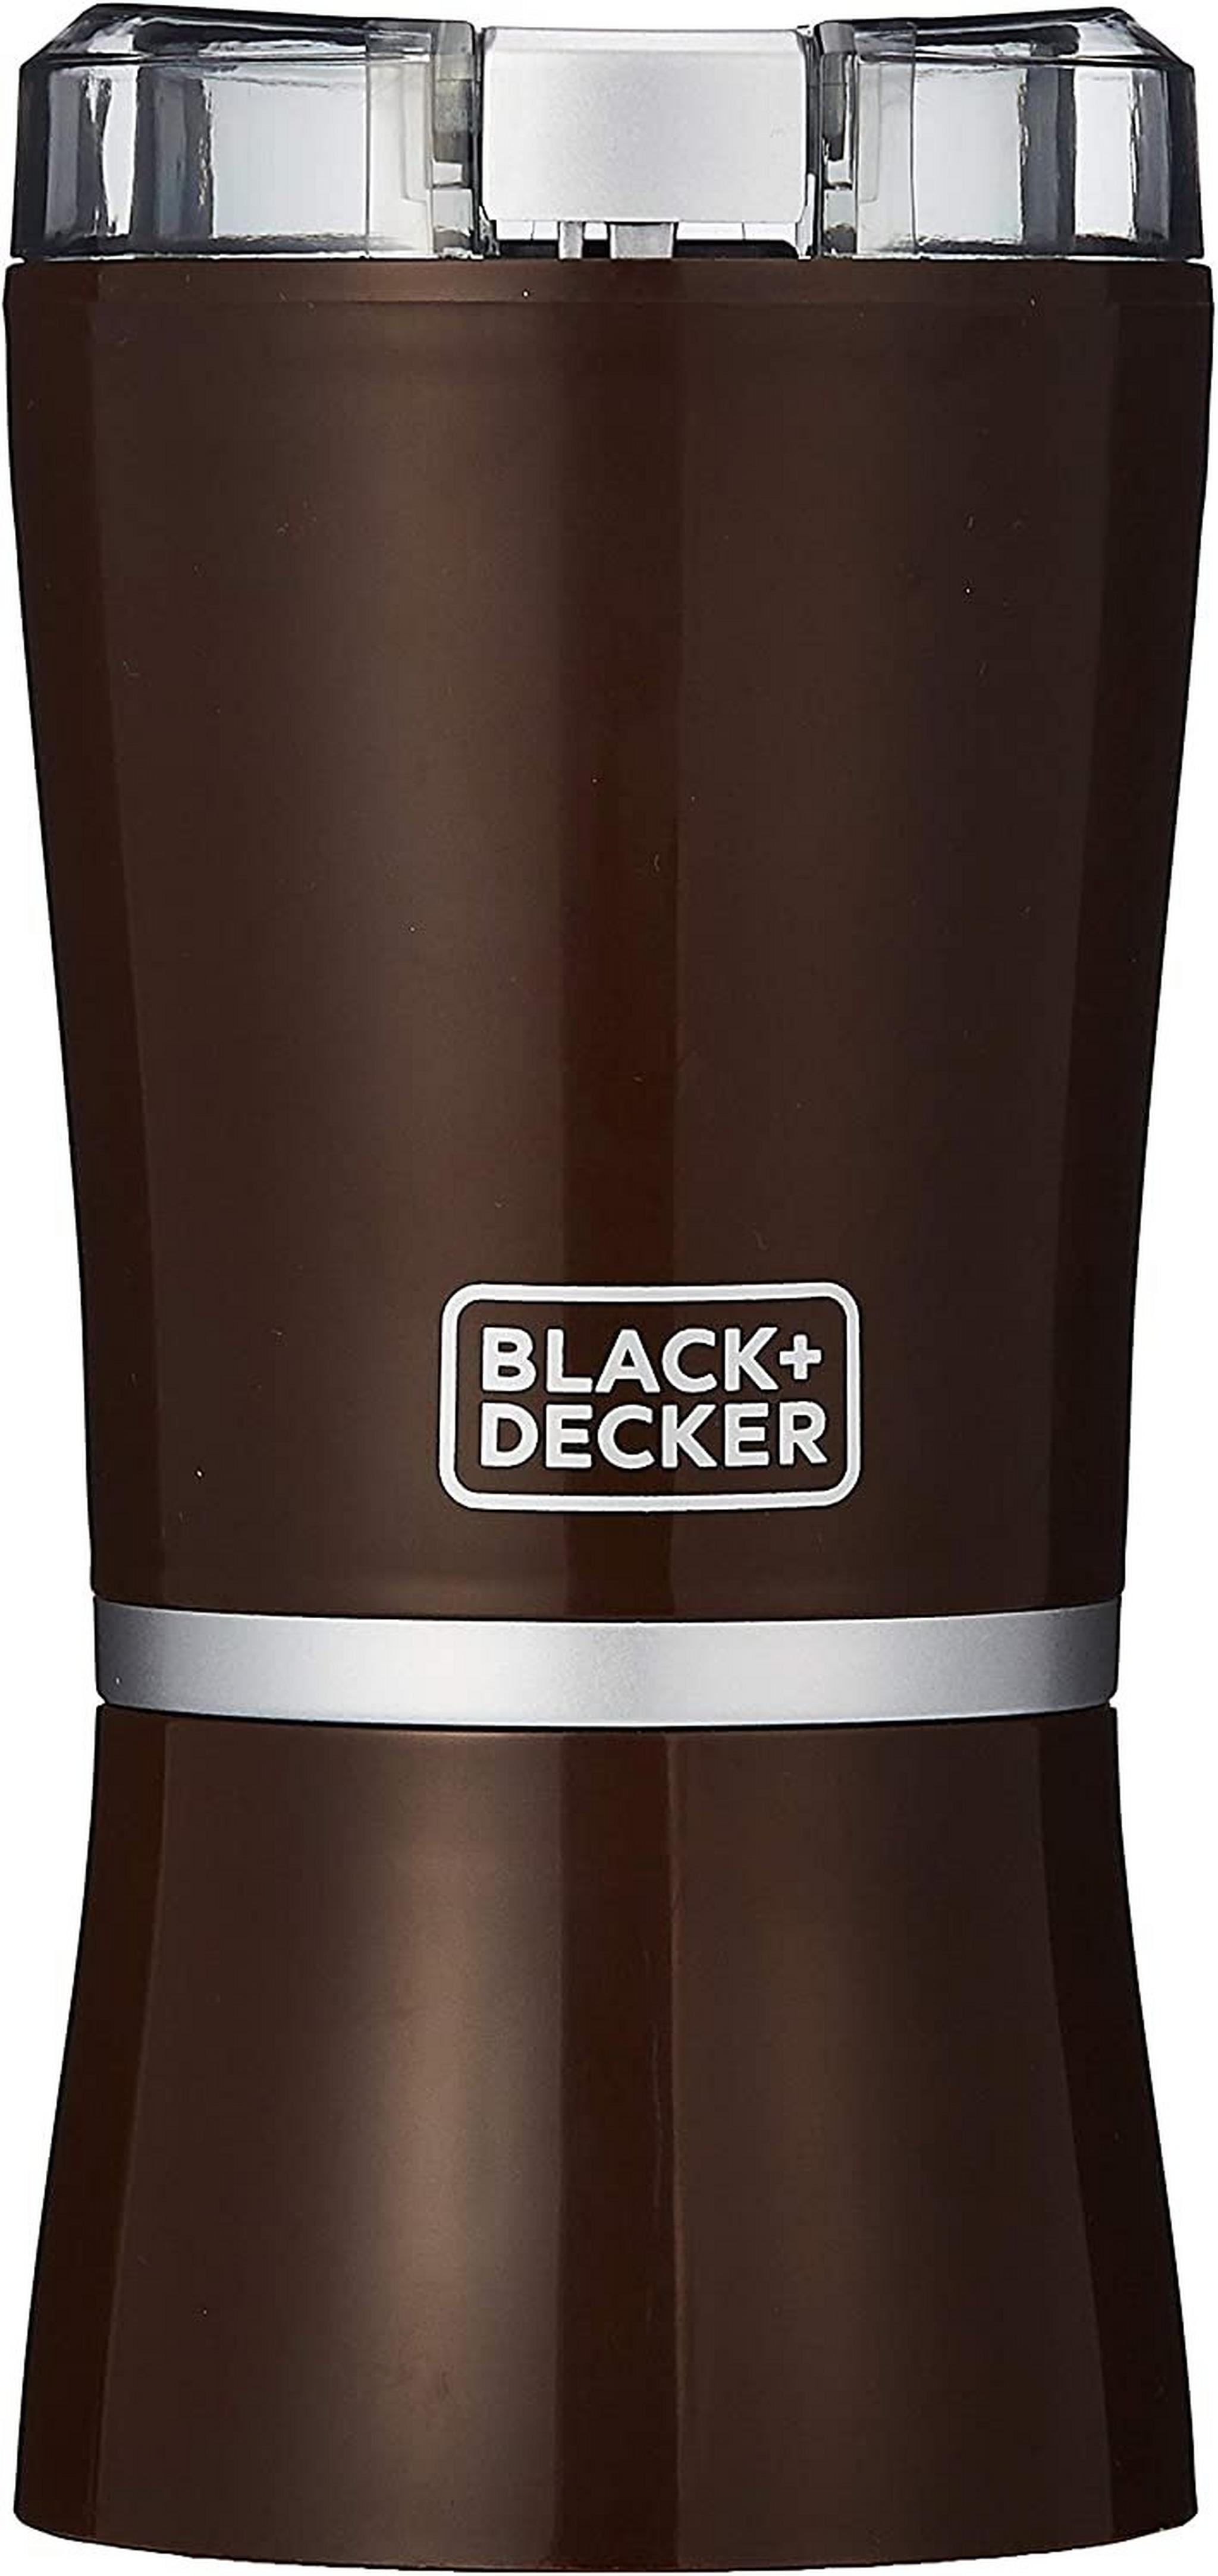 مطحنة القهوة ١٥٠ واط من بلاك اند ديكر (CBM 4-B5)